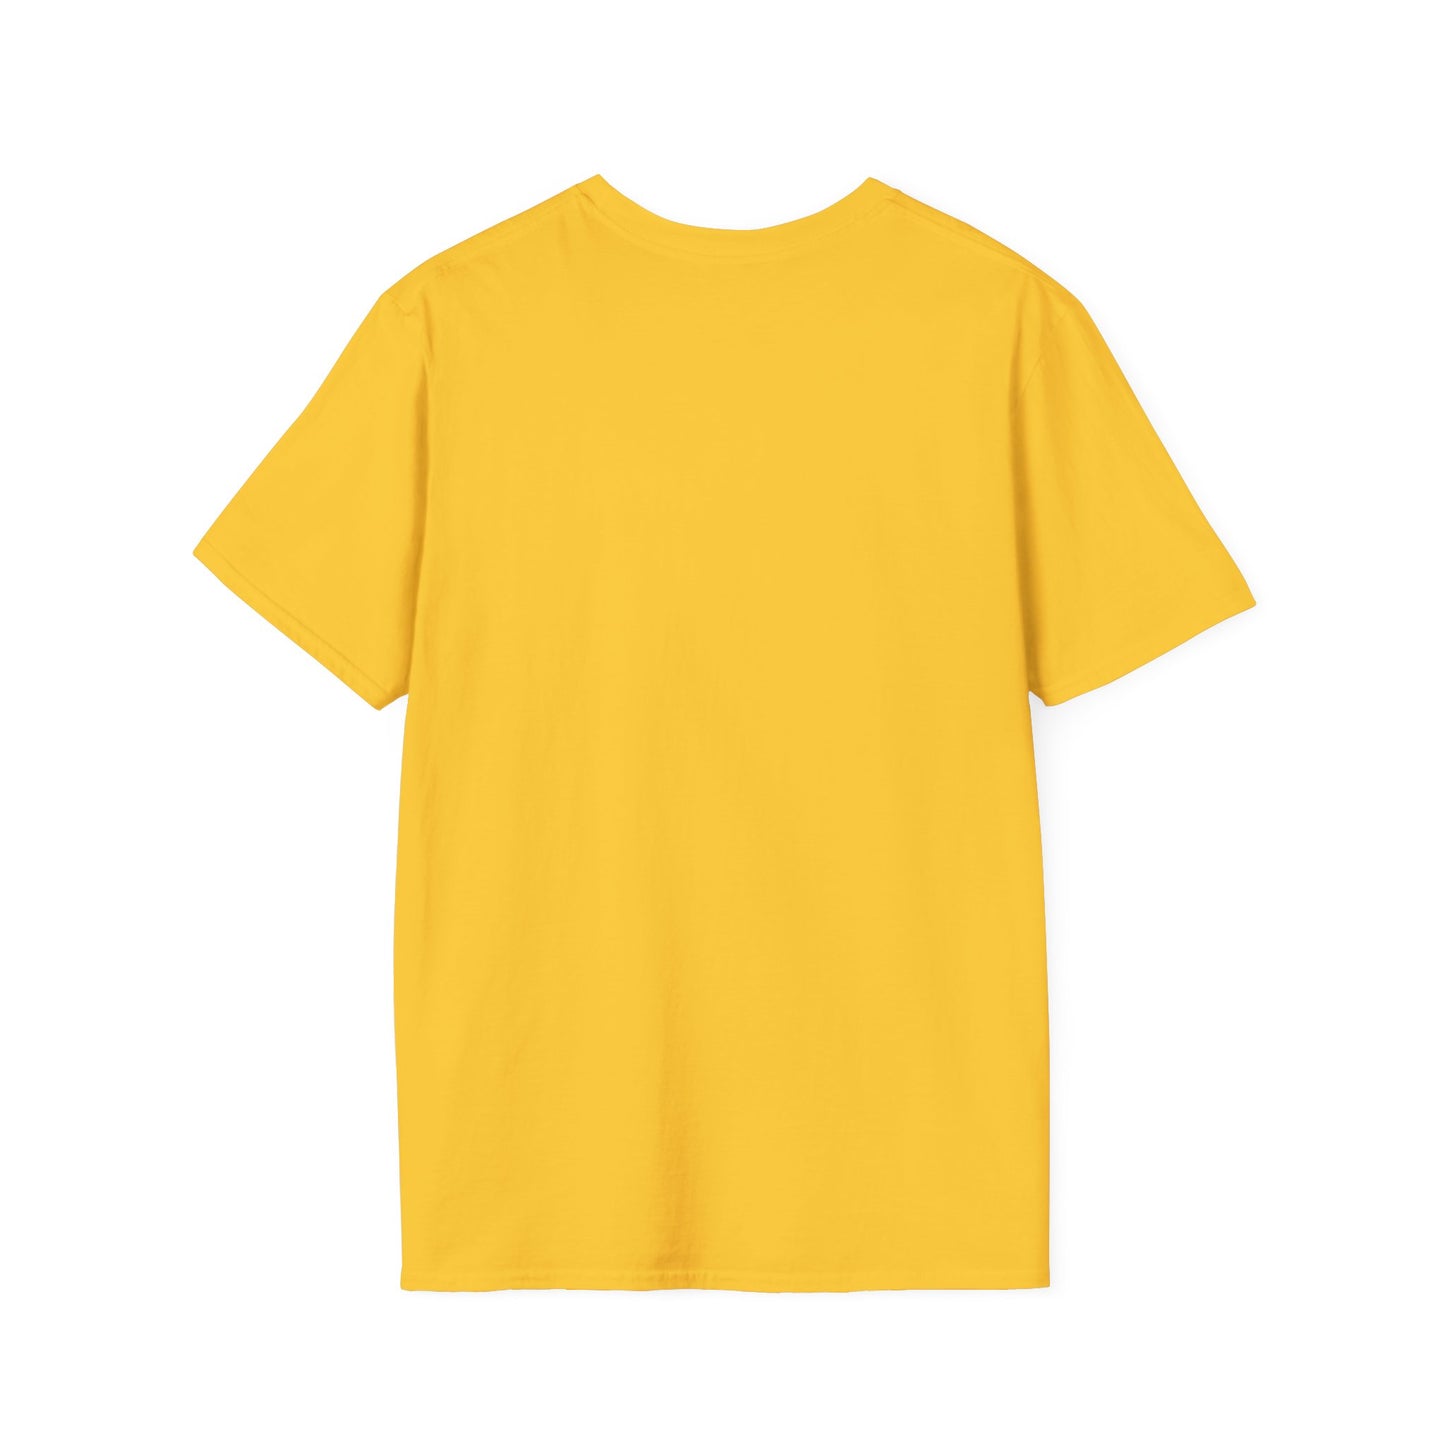 TG-13 Unisex Softstyle T-Shirt